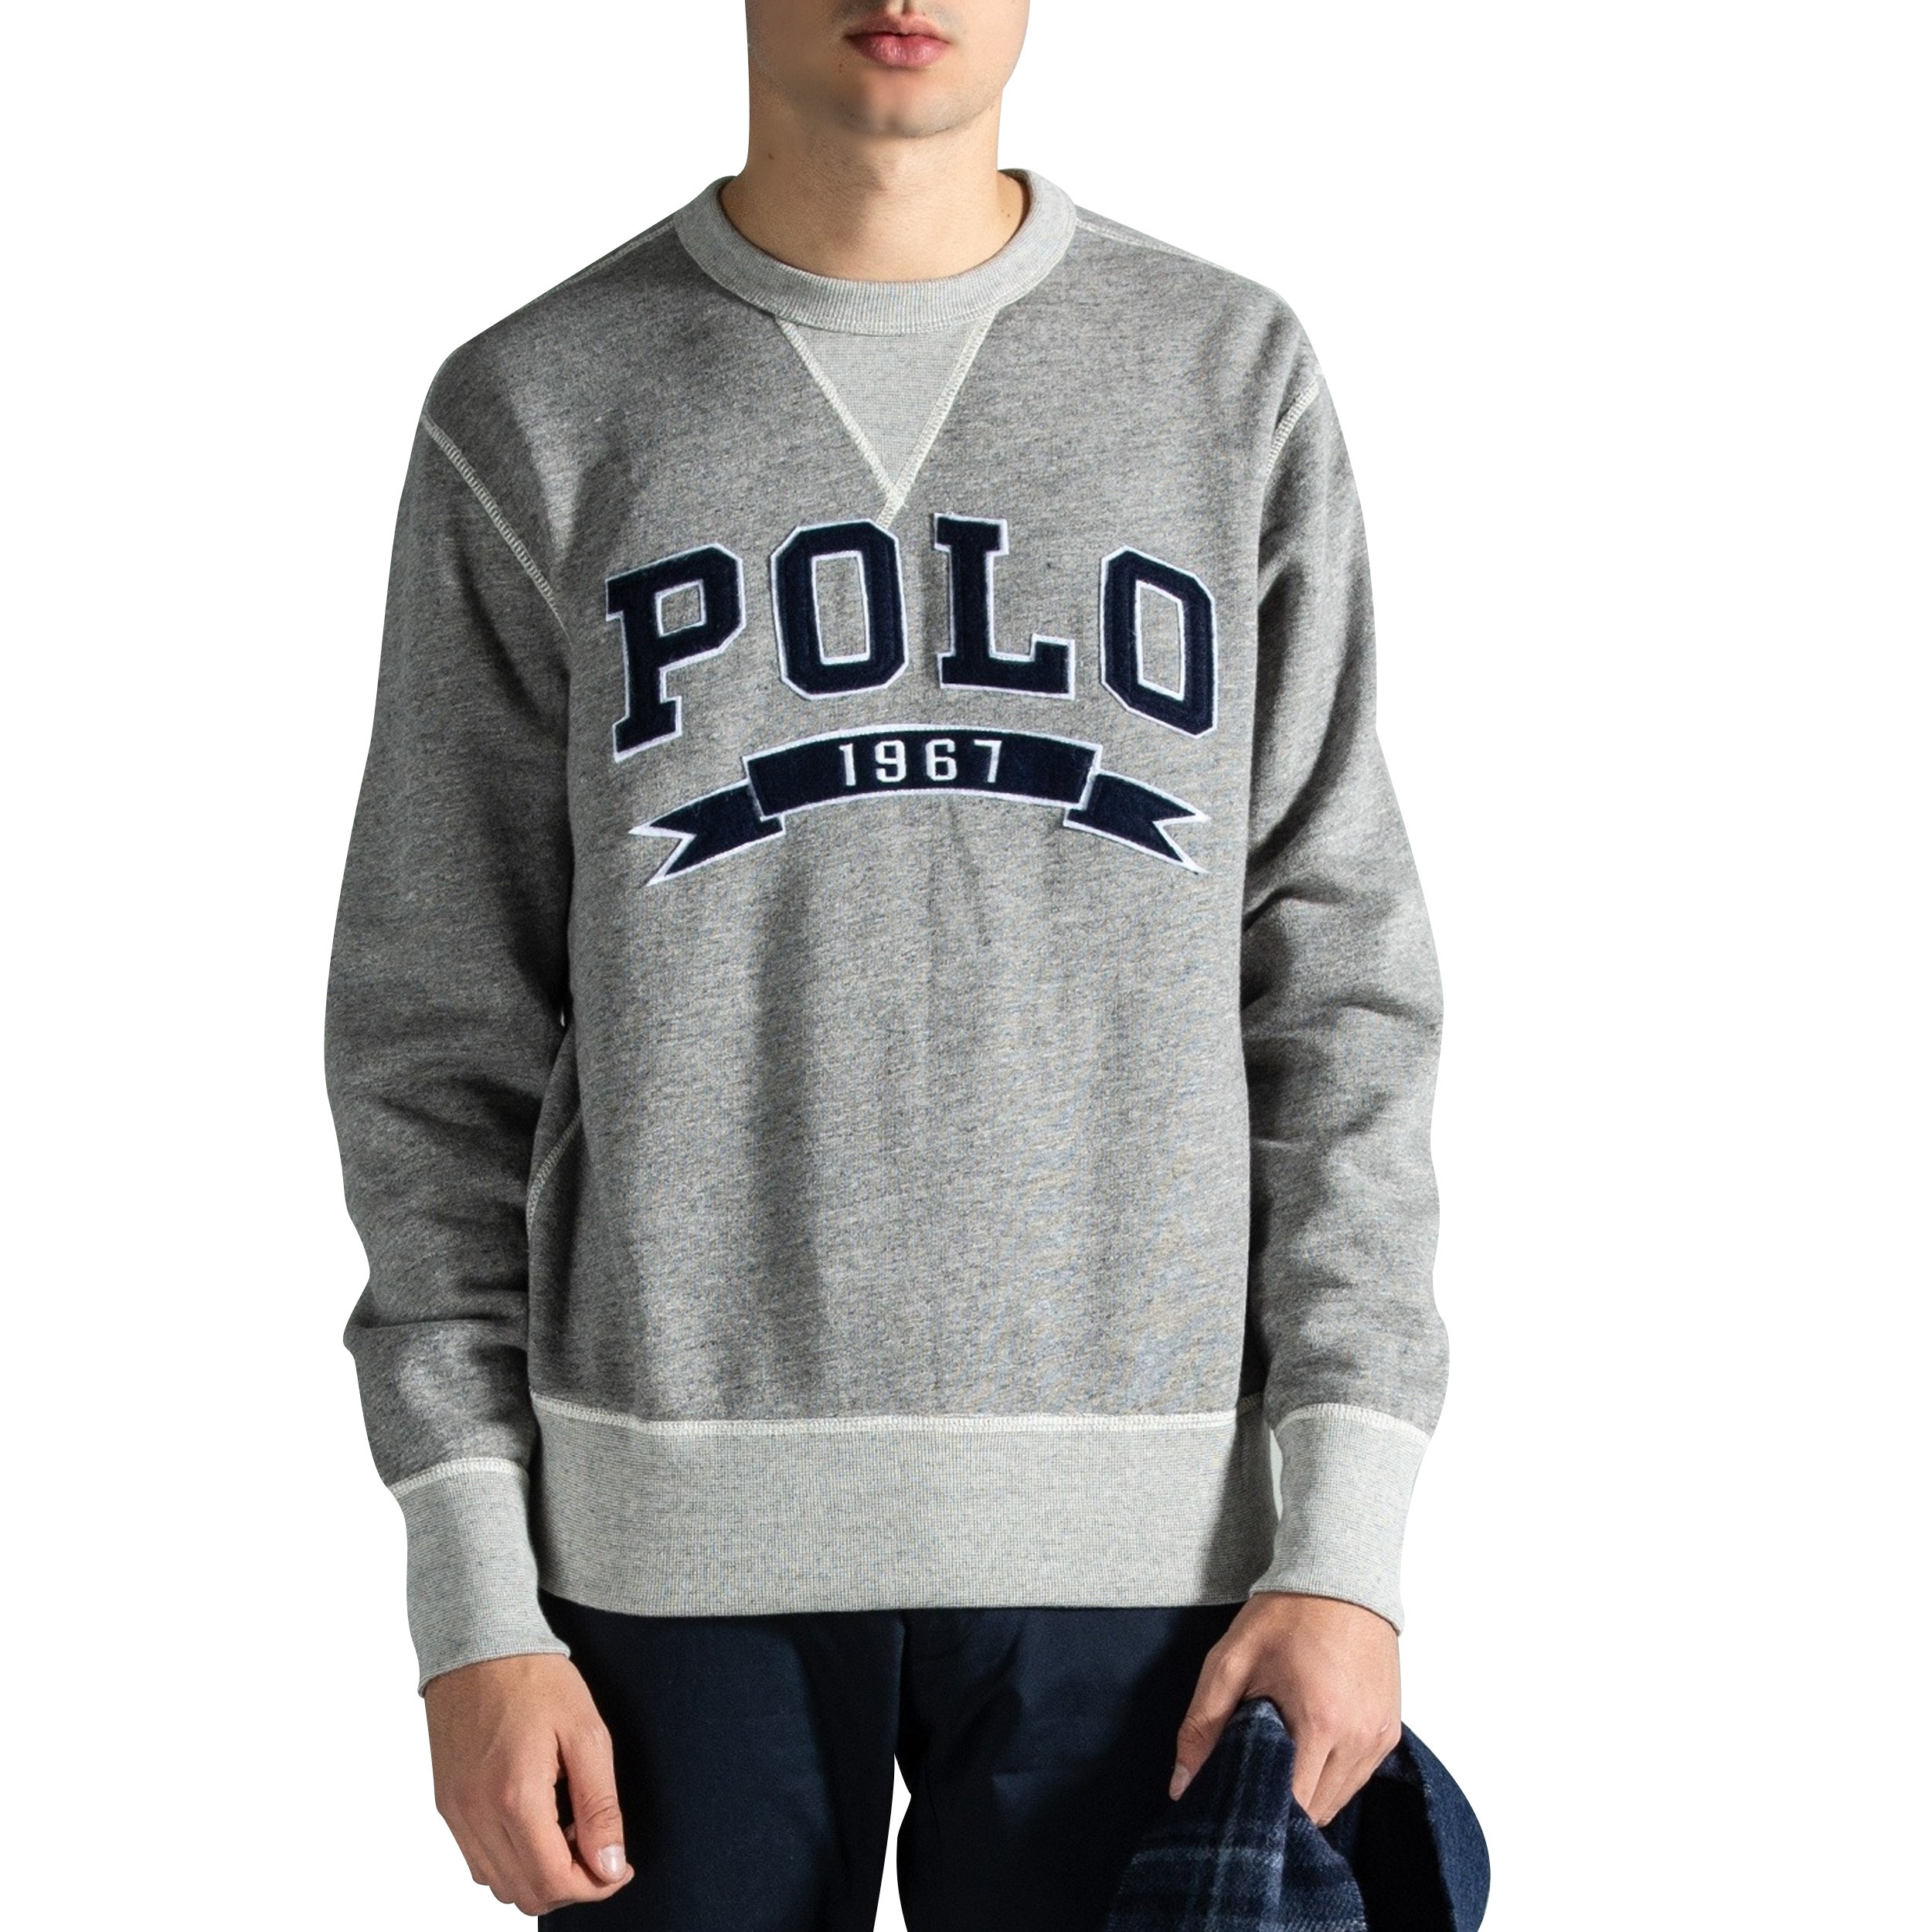 Polo Ralph Lauren Retro College Sweatshirt Grey